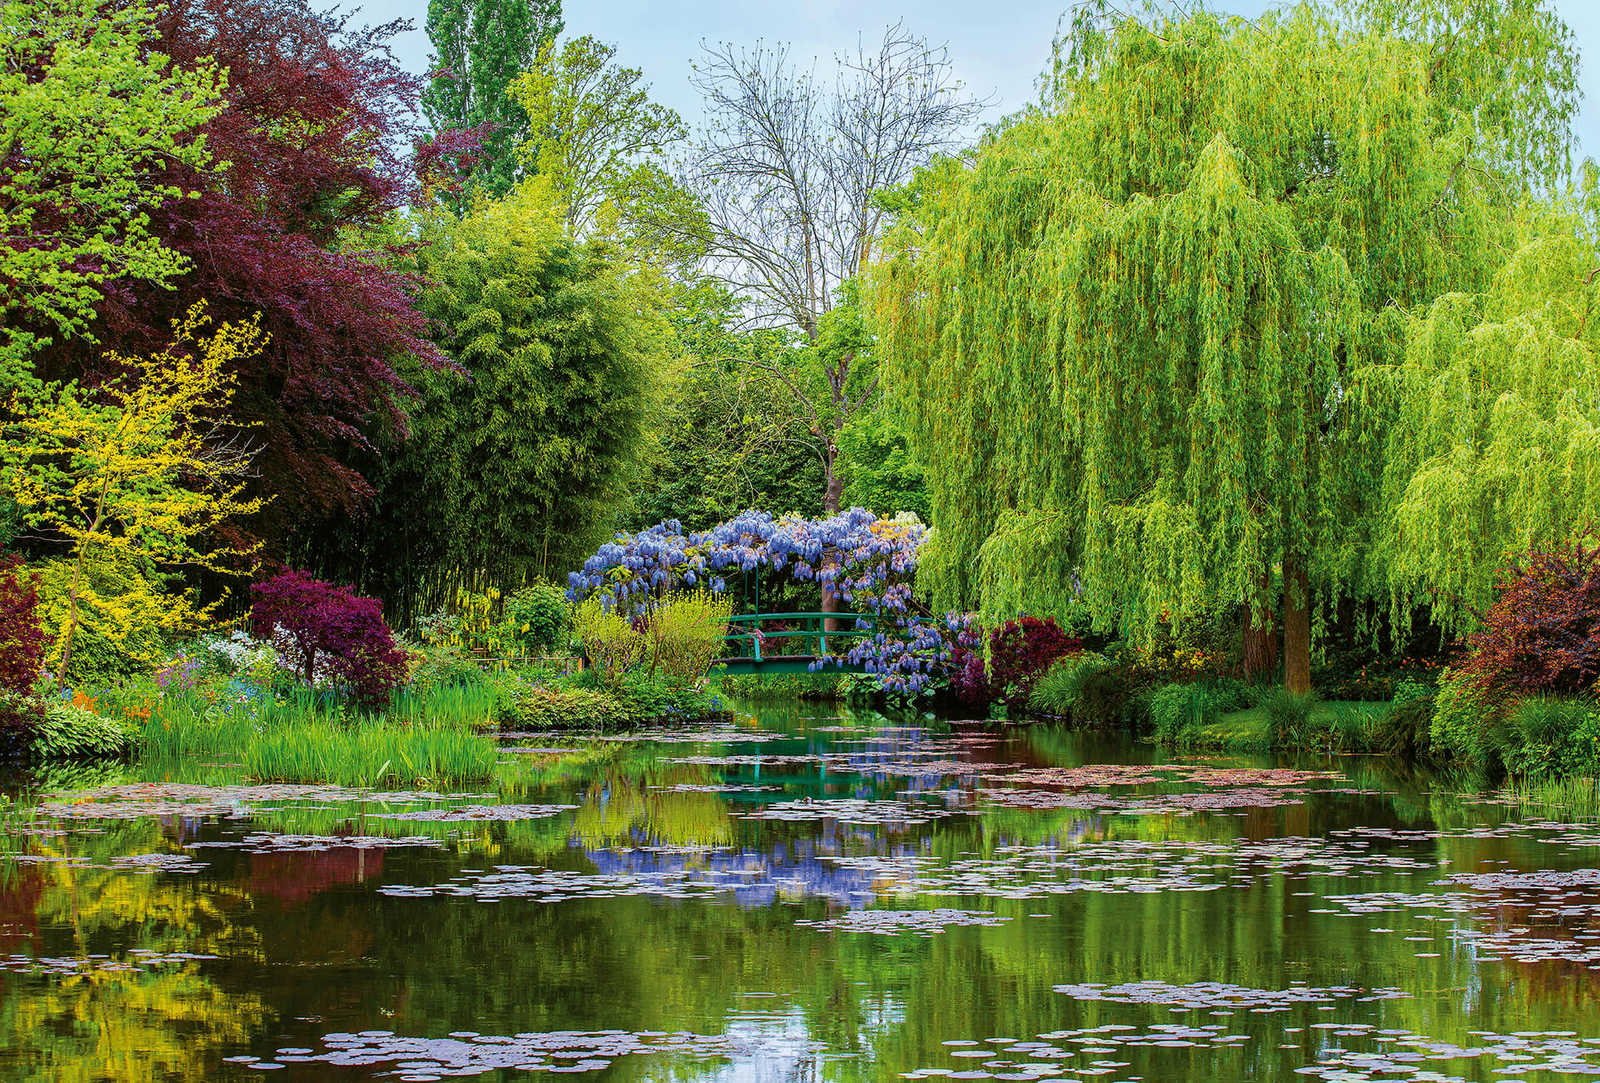             Fototapete Natur Garten mit See – Grün, Rot, Blau
        